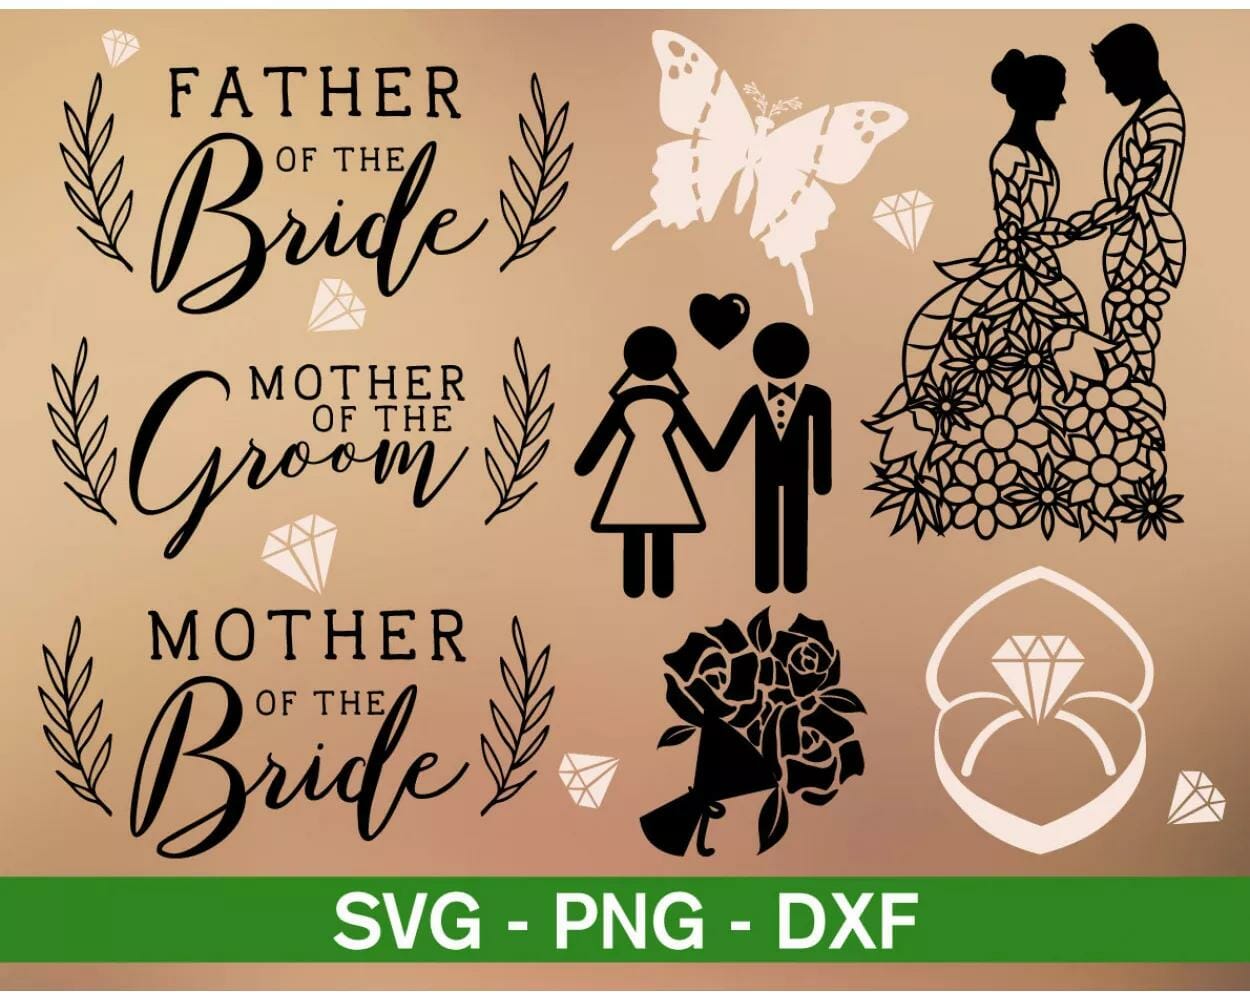 150+ Designs SVG PNG DXF Digital Download|||